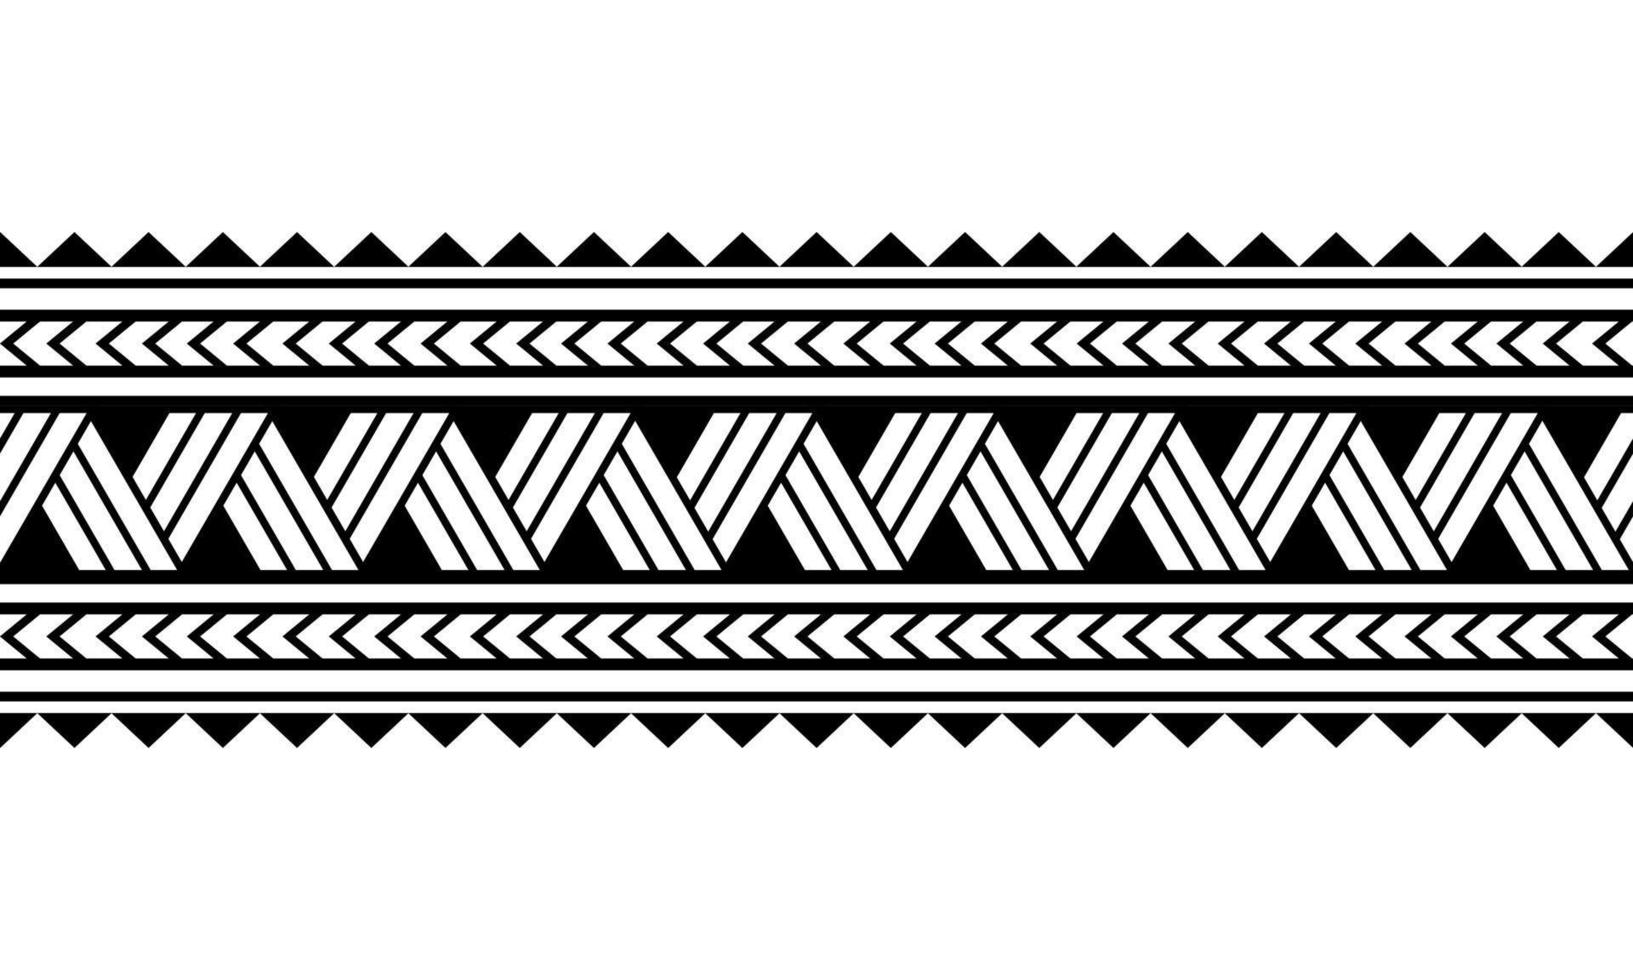 pulseira de tatuagem polinésia maori. vetor de padrão sem emenda de manga tribal.